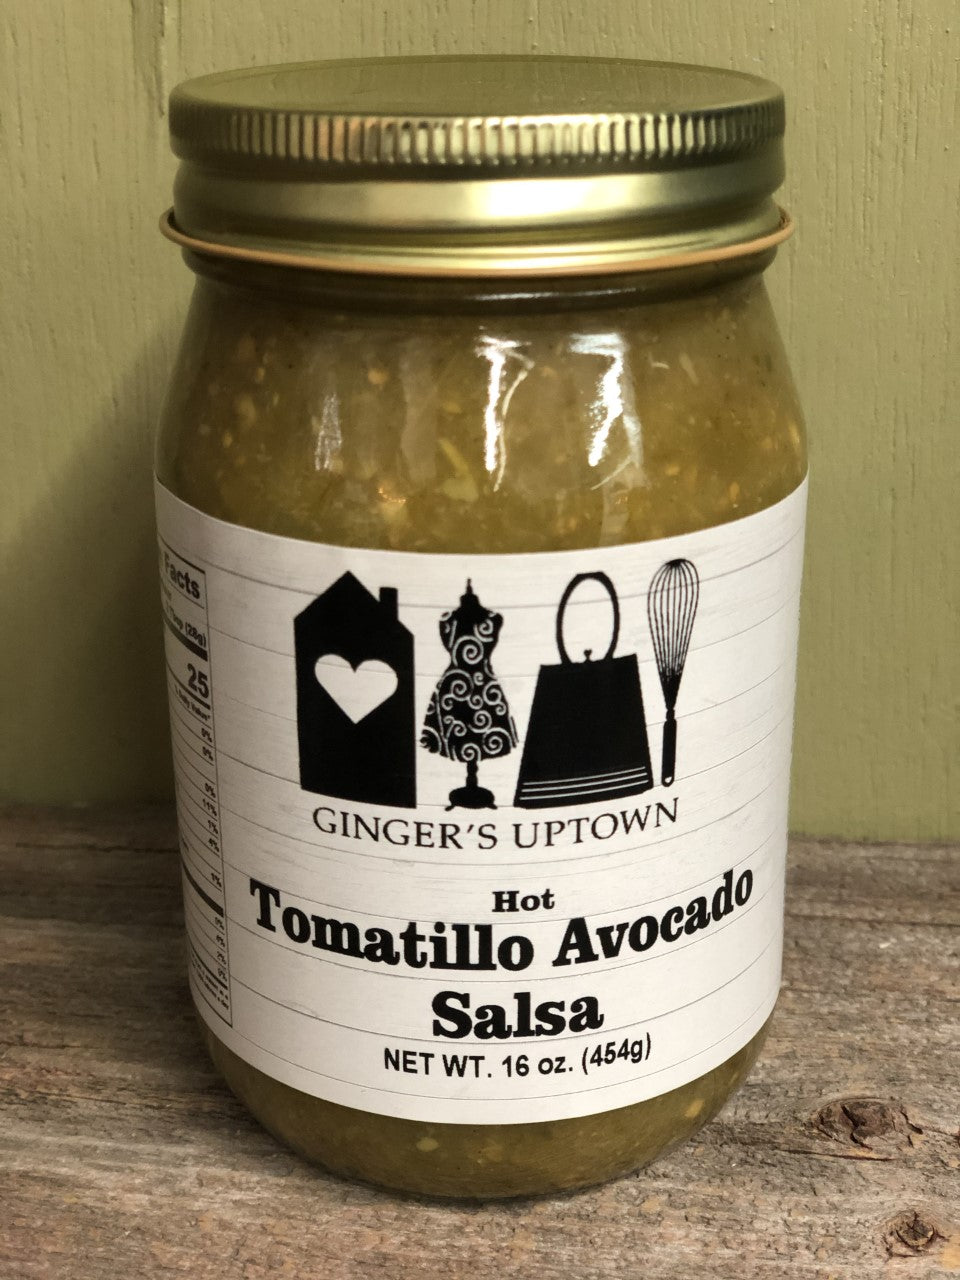 Tomatillo Avocado Salsa (Hot)